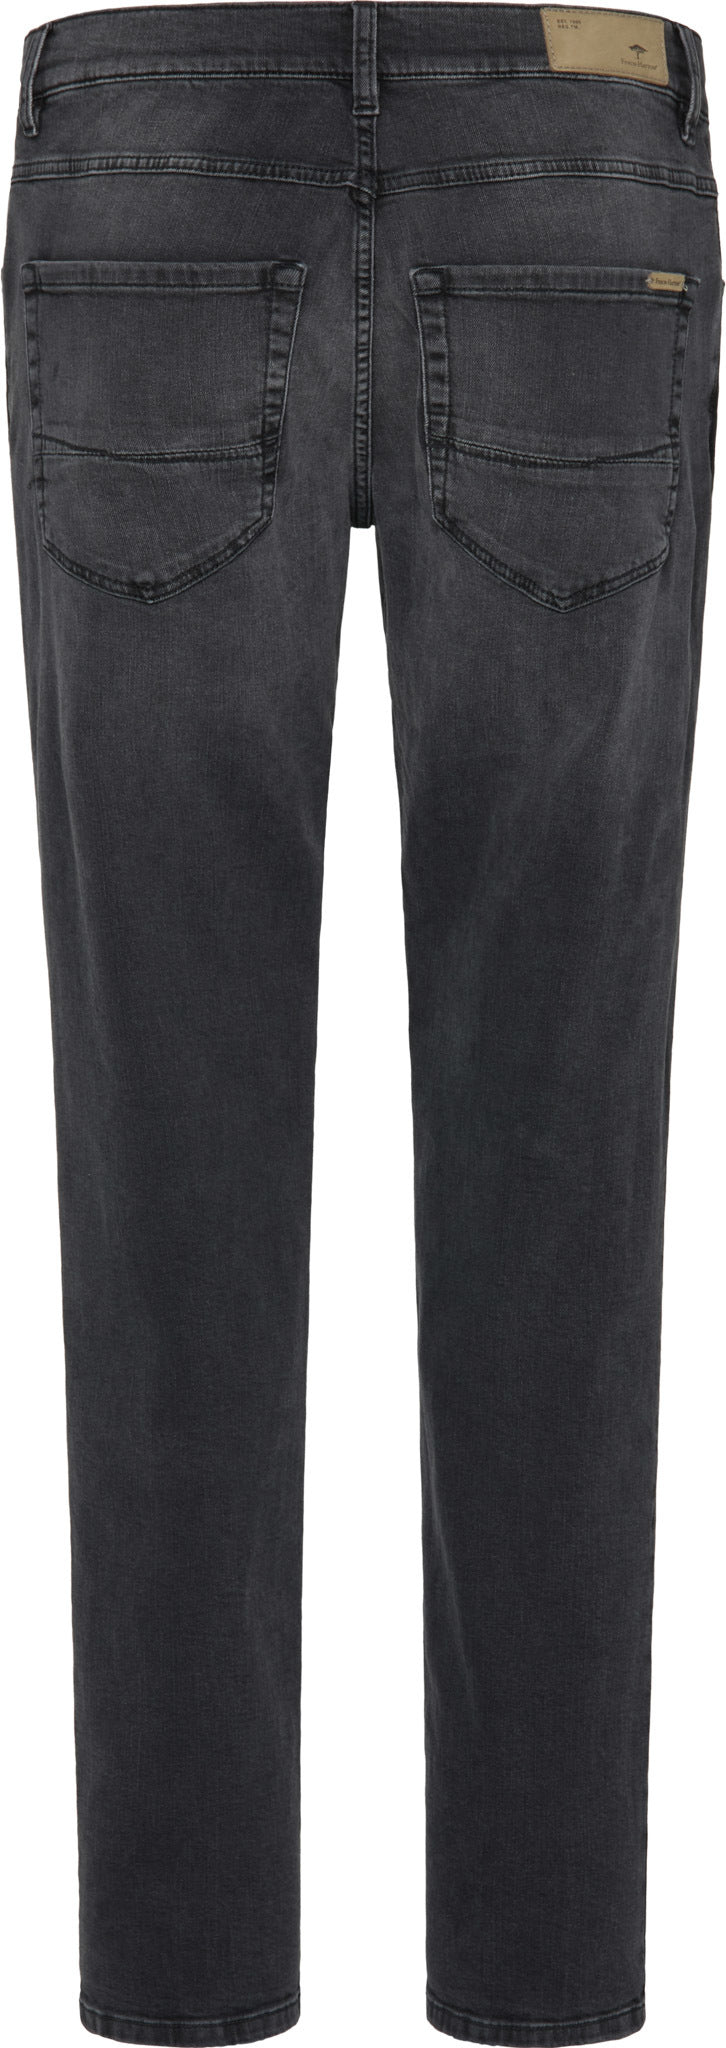 Fynch Hatton Durban Anthracite Denim Jeans